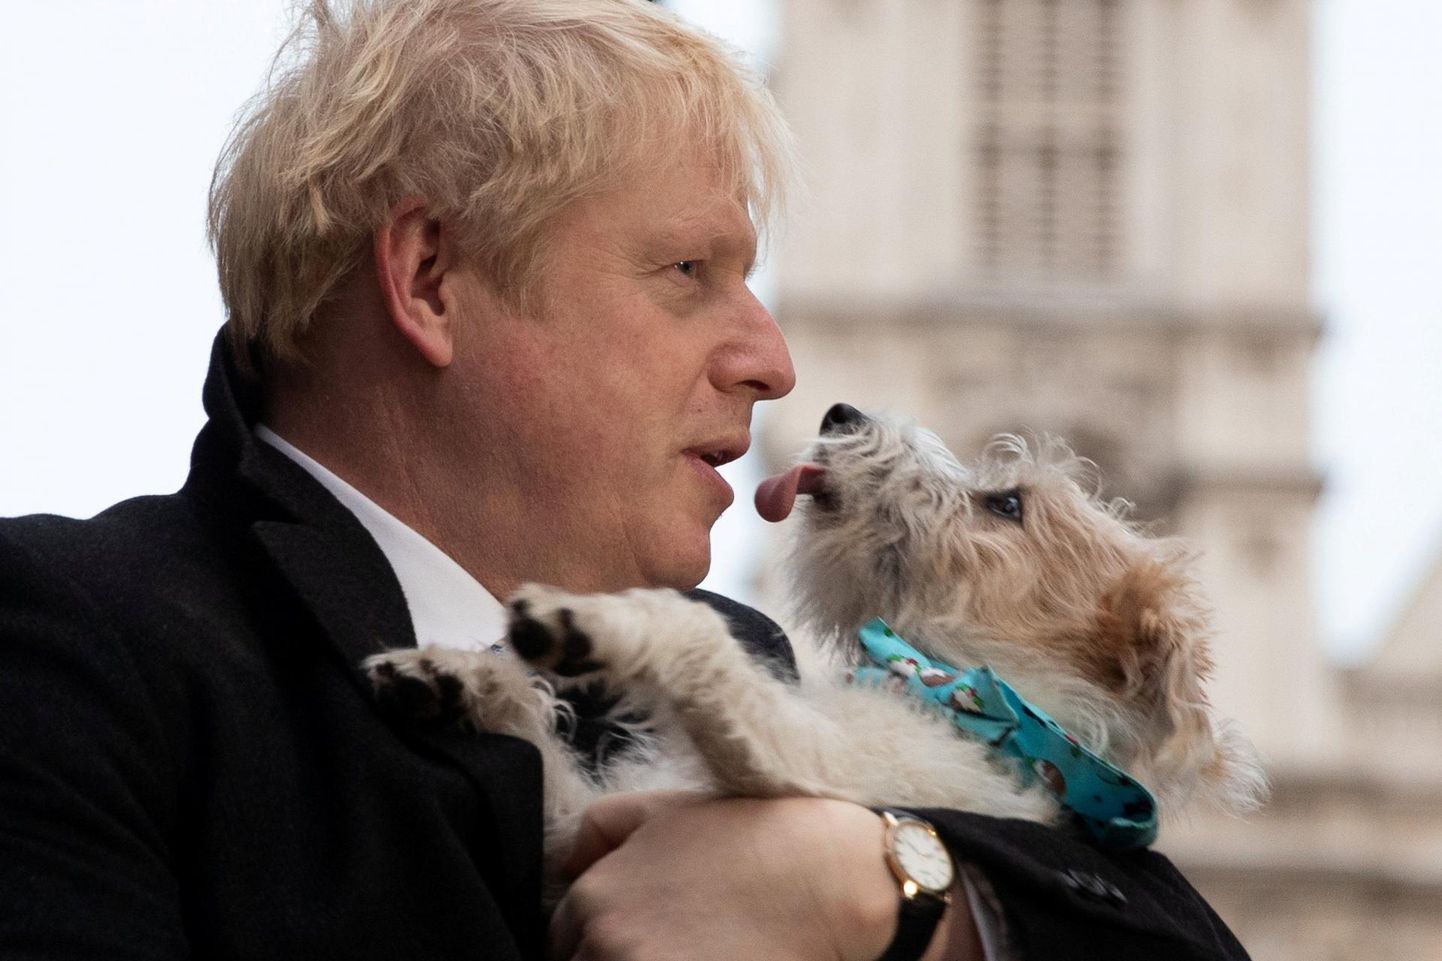 Briti peaminister kuulis Otto Treileri edusammudest koeraga vestlemisel ja otsib oma lemmikuga samasugust lähedust.